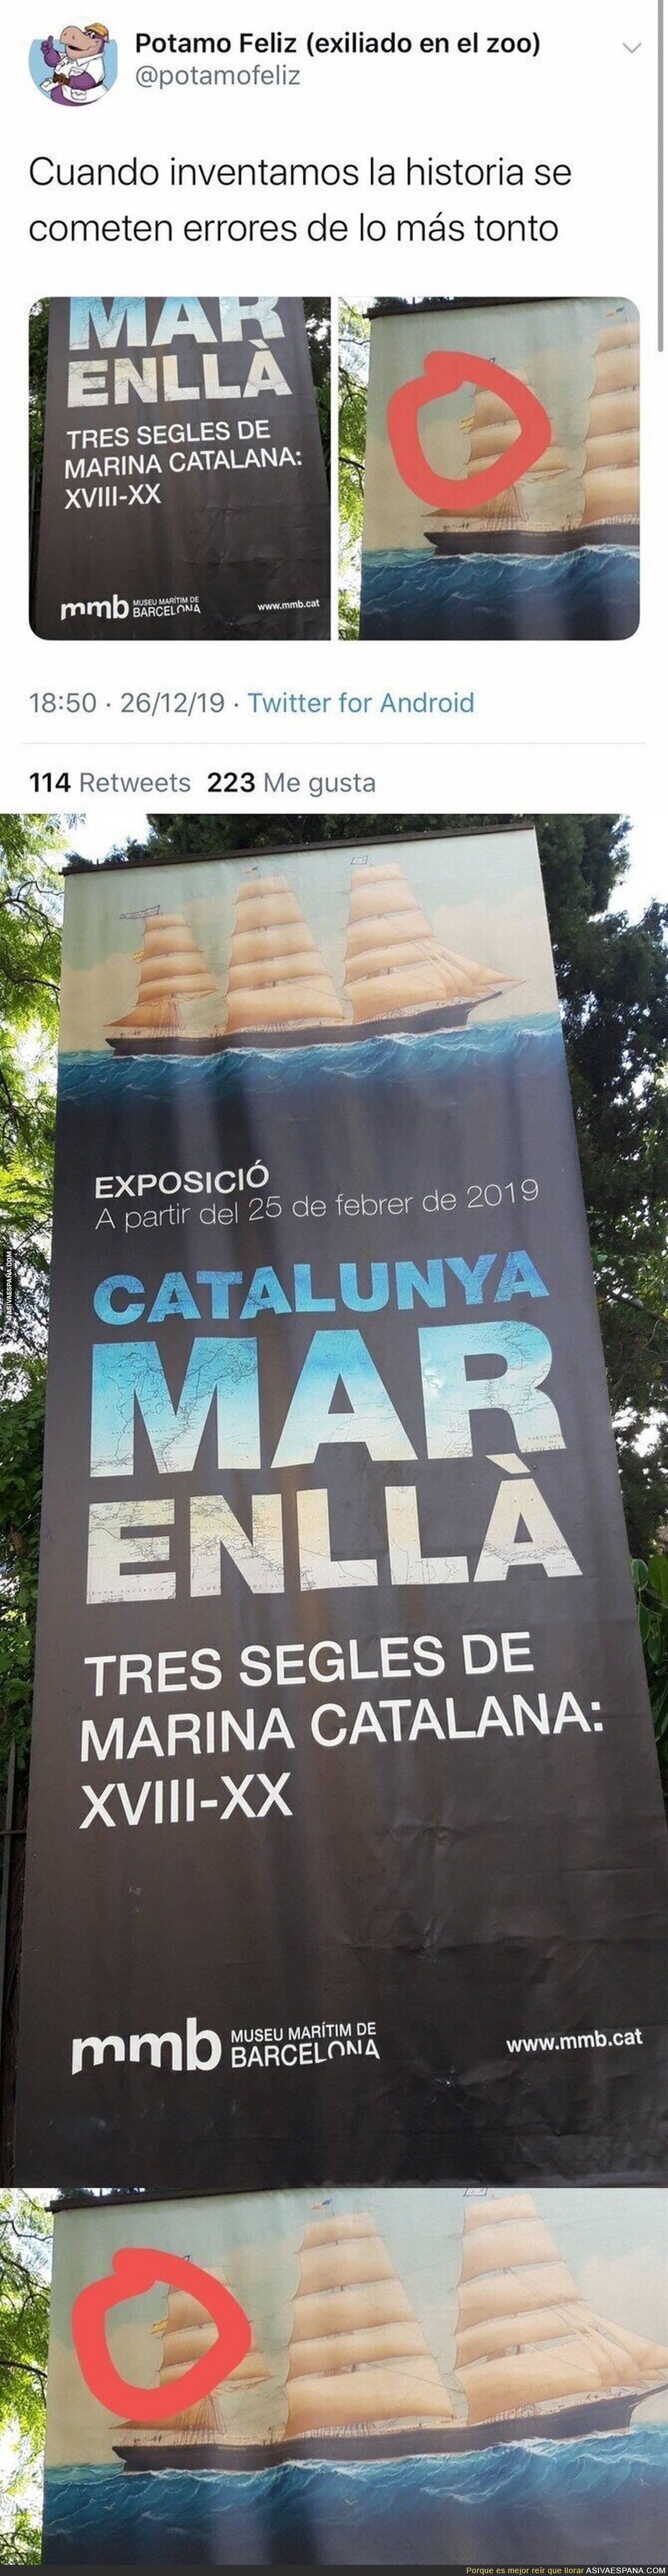 Exposición de la Marina Catalana